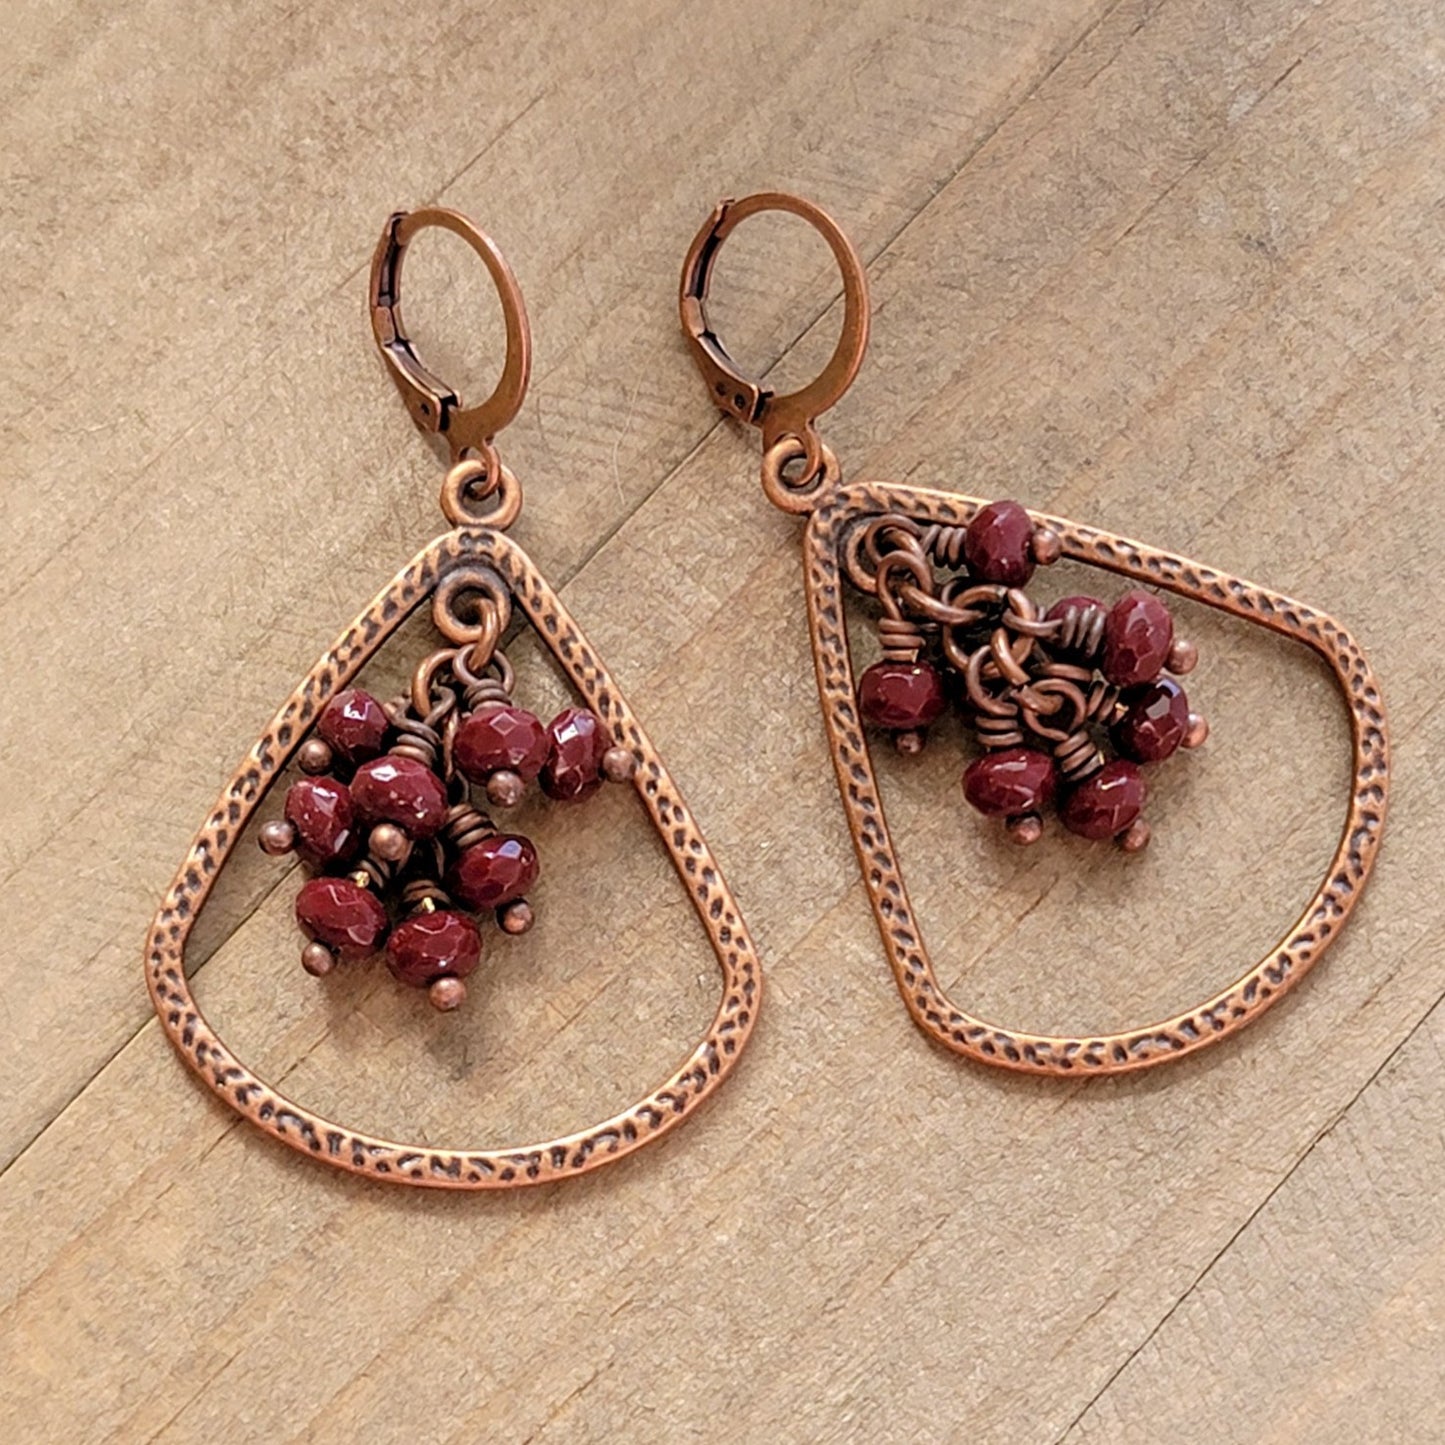 Teardrop Copper Dangle Earrings with Czech Glass Fringe - Nicki Lynn Jewelry